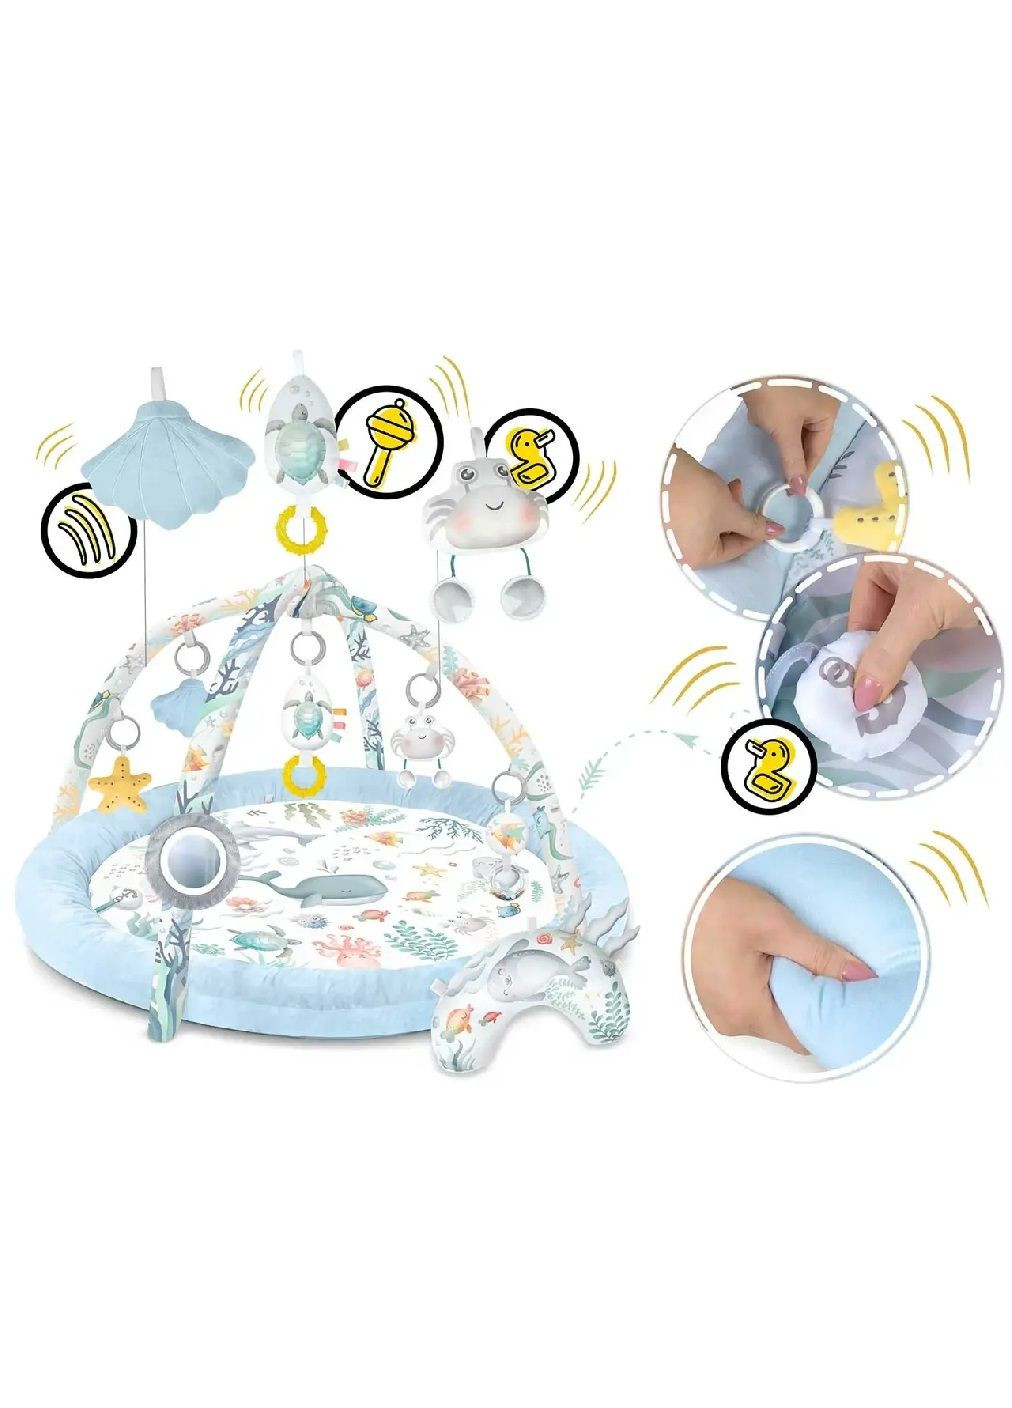 Розвиваючий інтерактивний ігровий килимок для дітей малюків з іграшками подушкою (476610-Prob) Океан блакитний Unbranded (285738607)